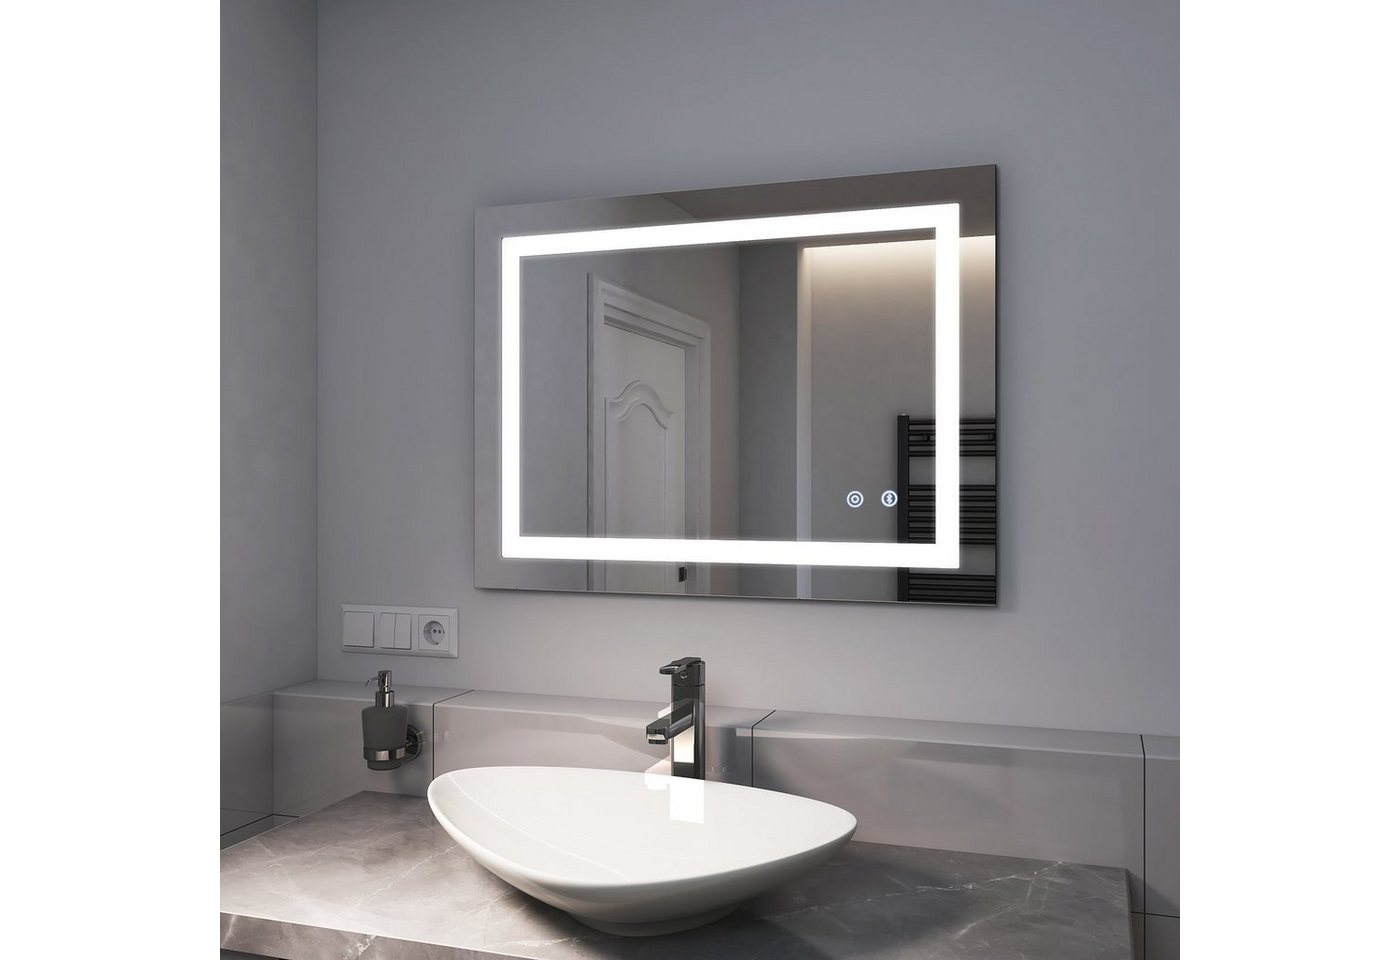 EMKE Badspiegel EMKE Badspiegel mit Beleuchtung LED Badezimmerspiegel 80x60cm, mit Touch, Bluetooth und 3 Lichtfarben Dimmbar,Speicherfunktion von EMKE